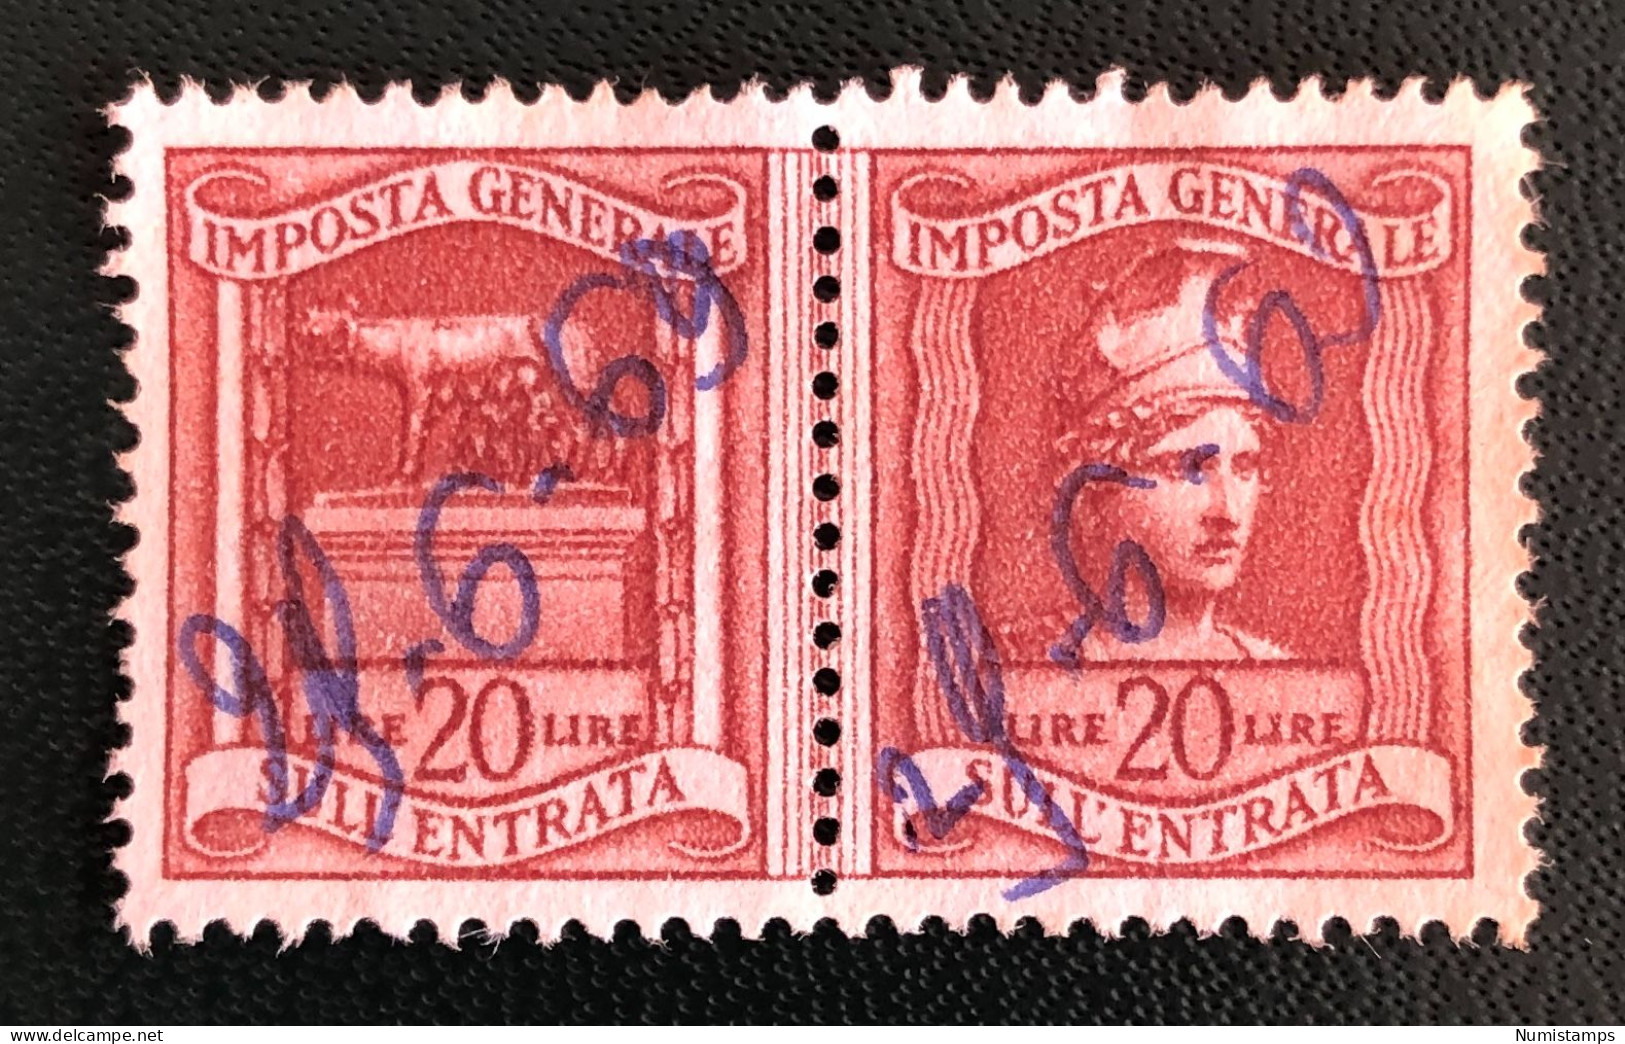 Imposta Generale Sull'entrata - Lire 20 - Revenue Stamps